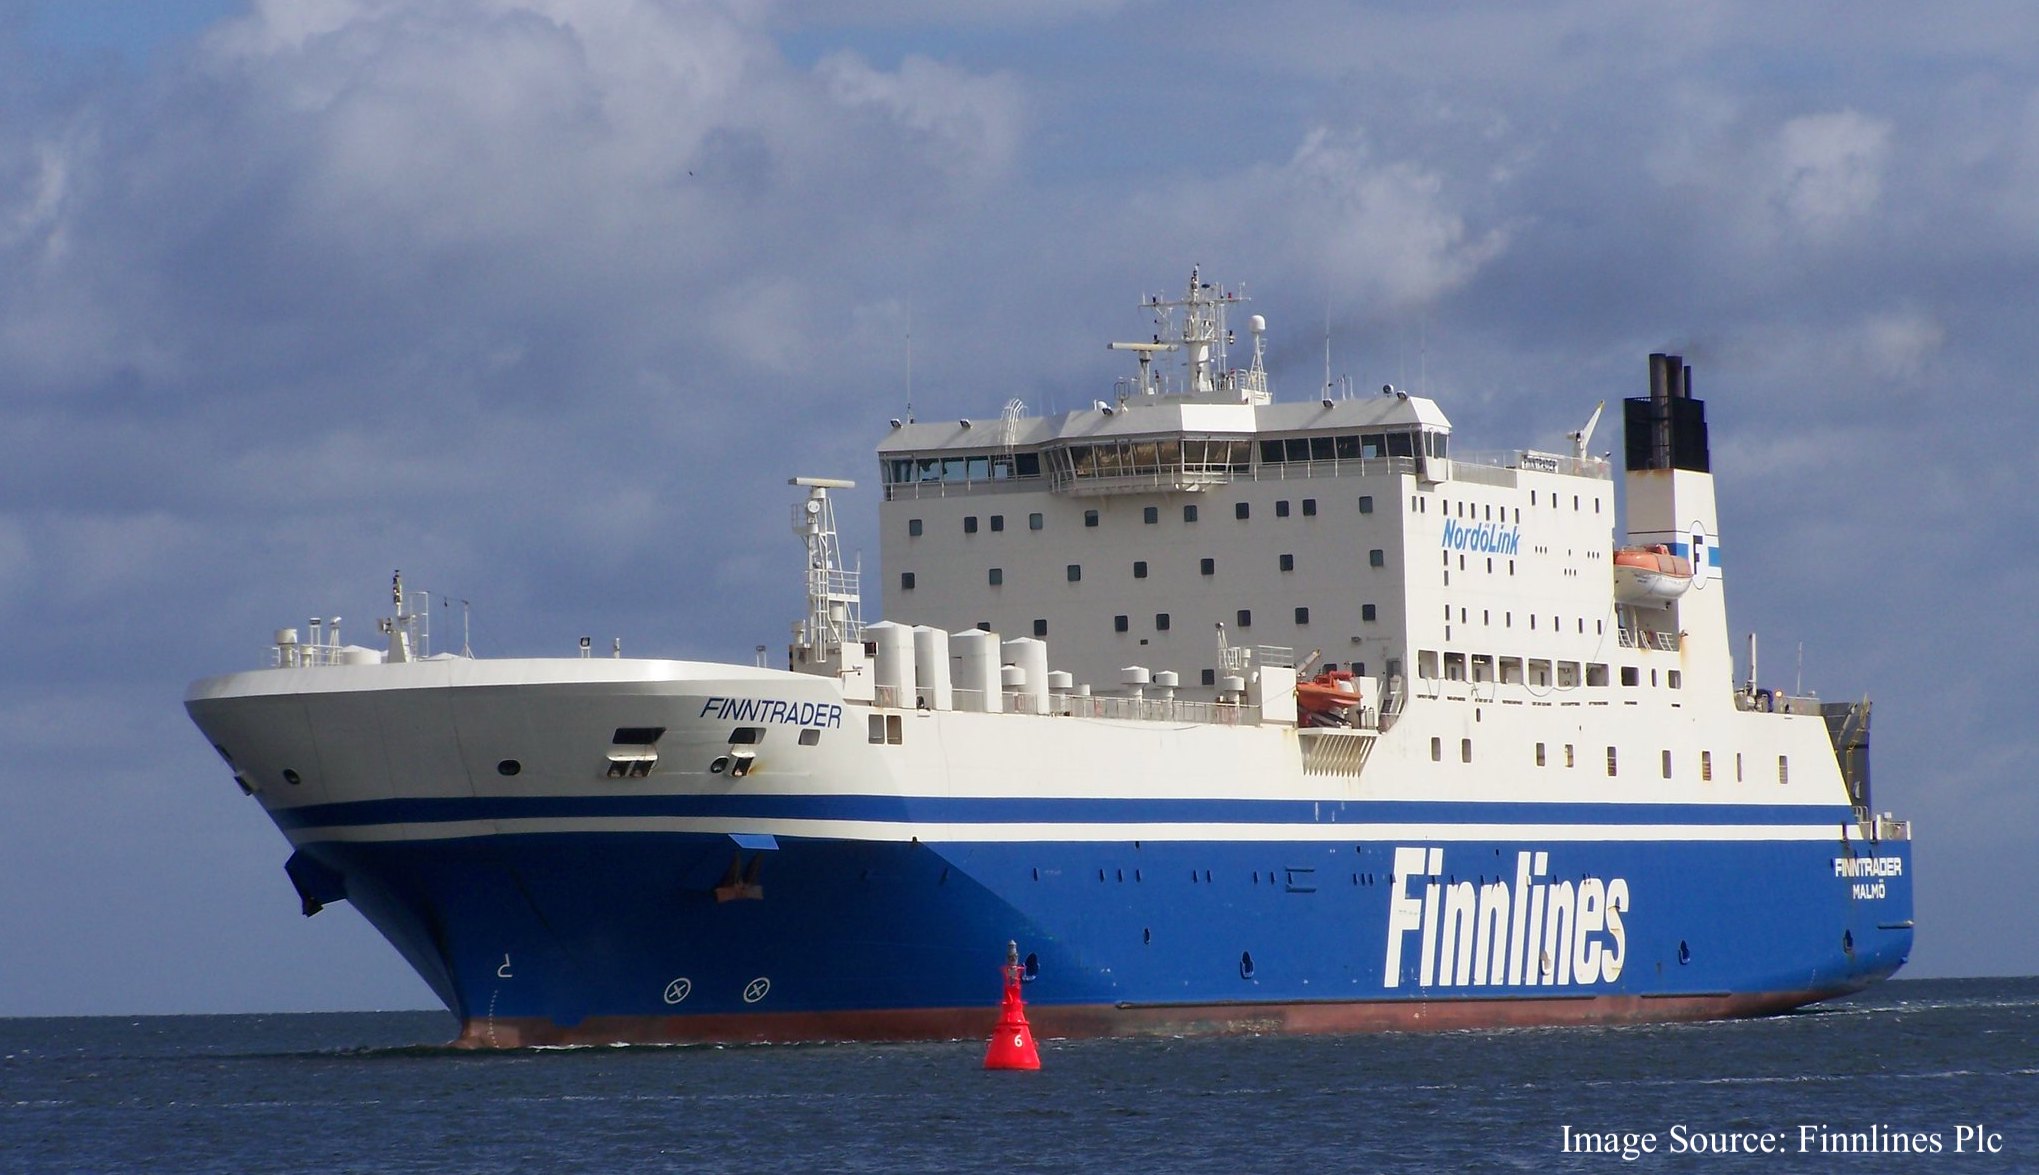 Finnlines - Finntrader 船の写真